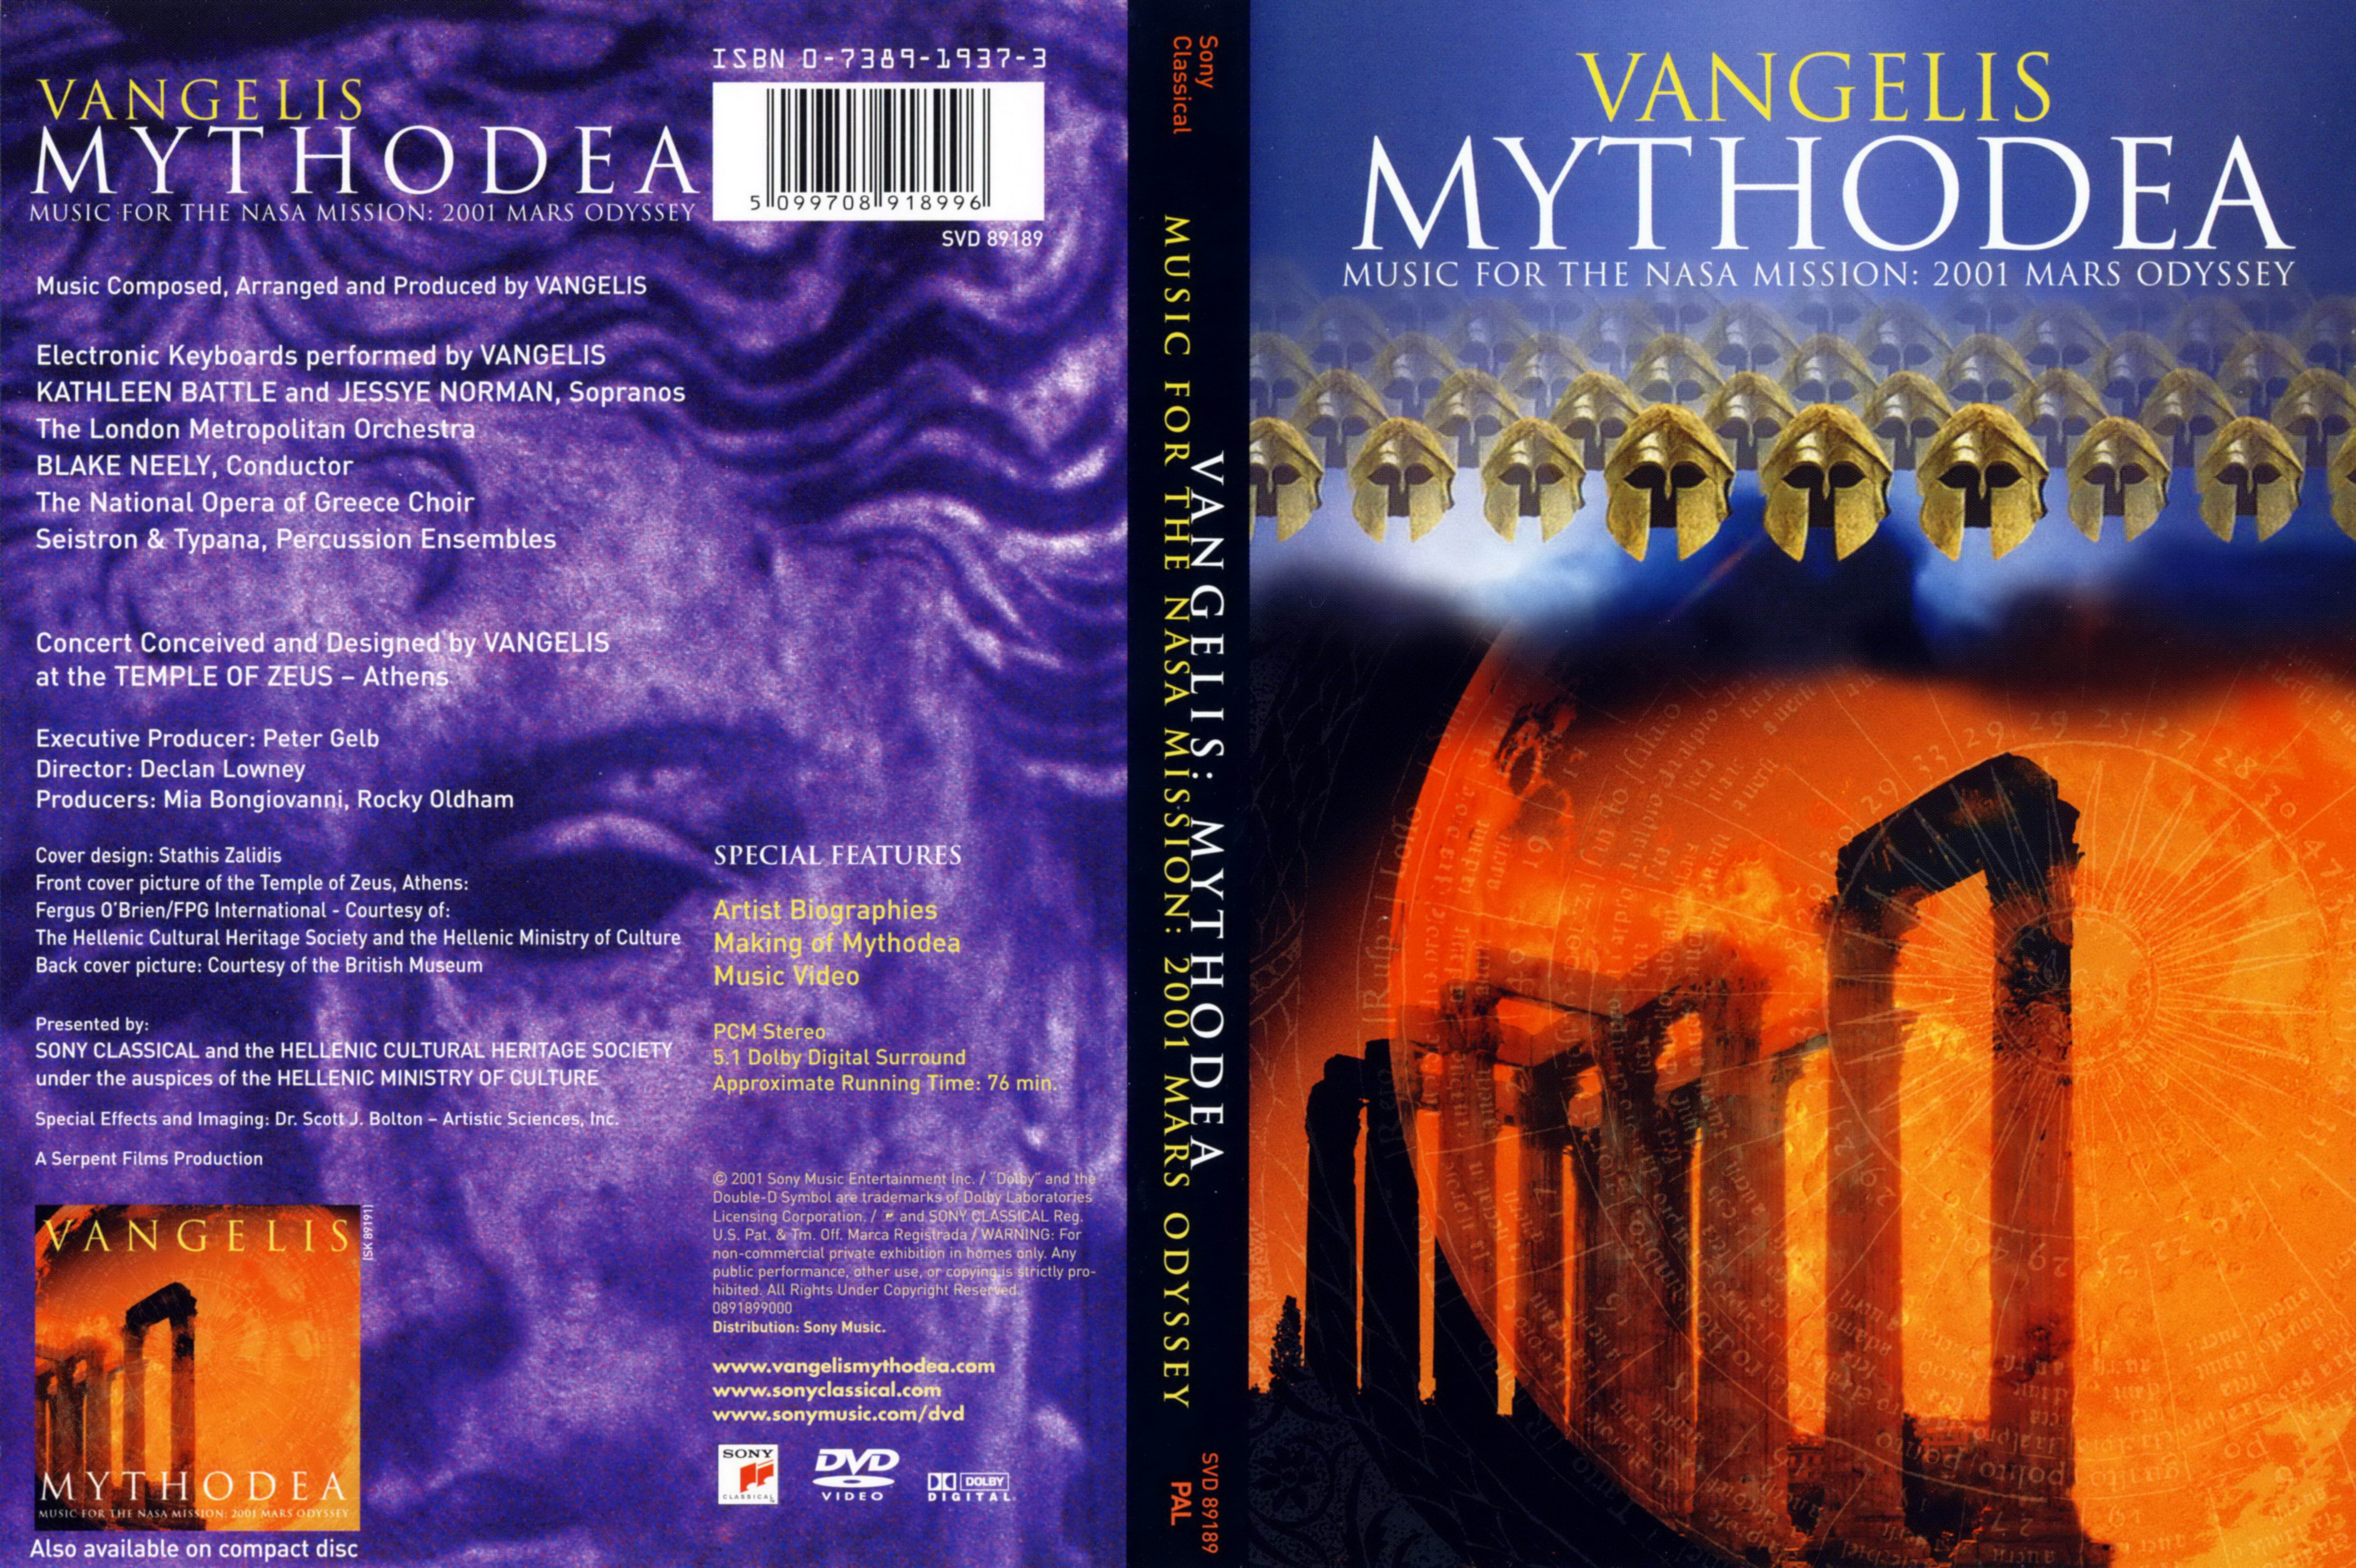 Jaquette DVD Vangelis Mythodea